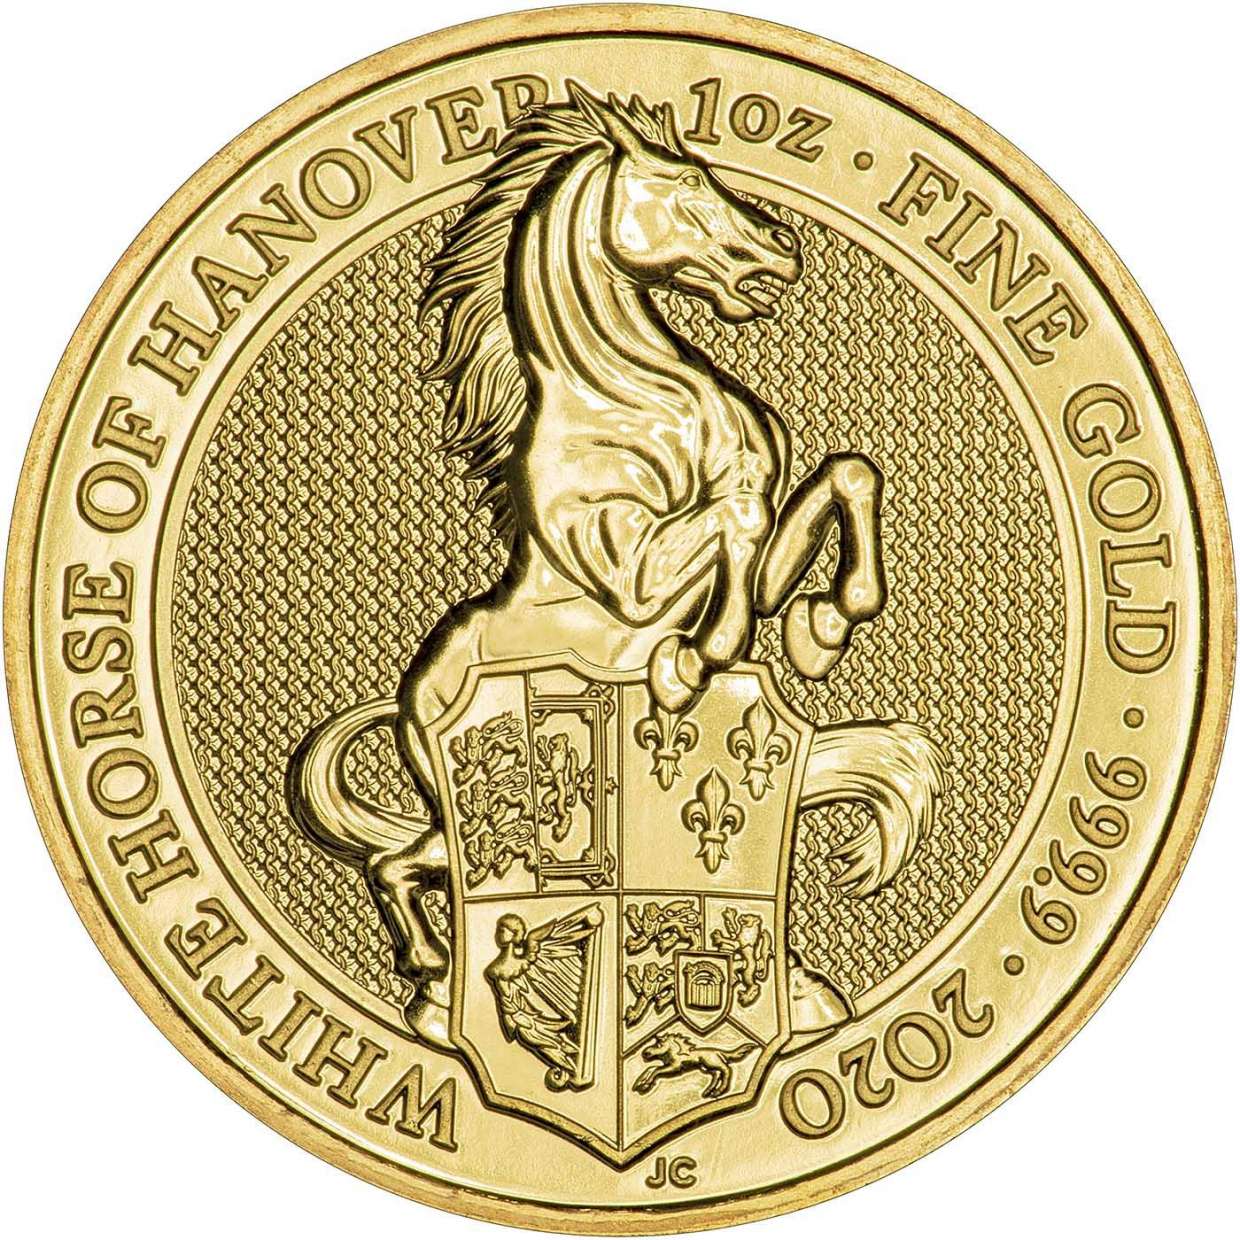 White Horse of Hanover Gold Bullion 1oz Reverse The Royal Mint 